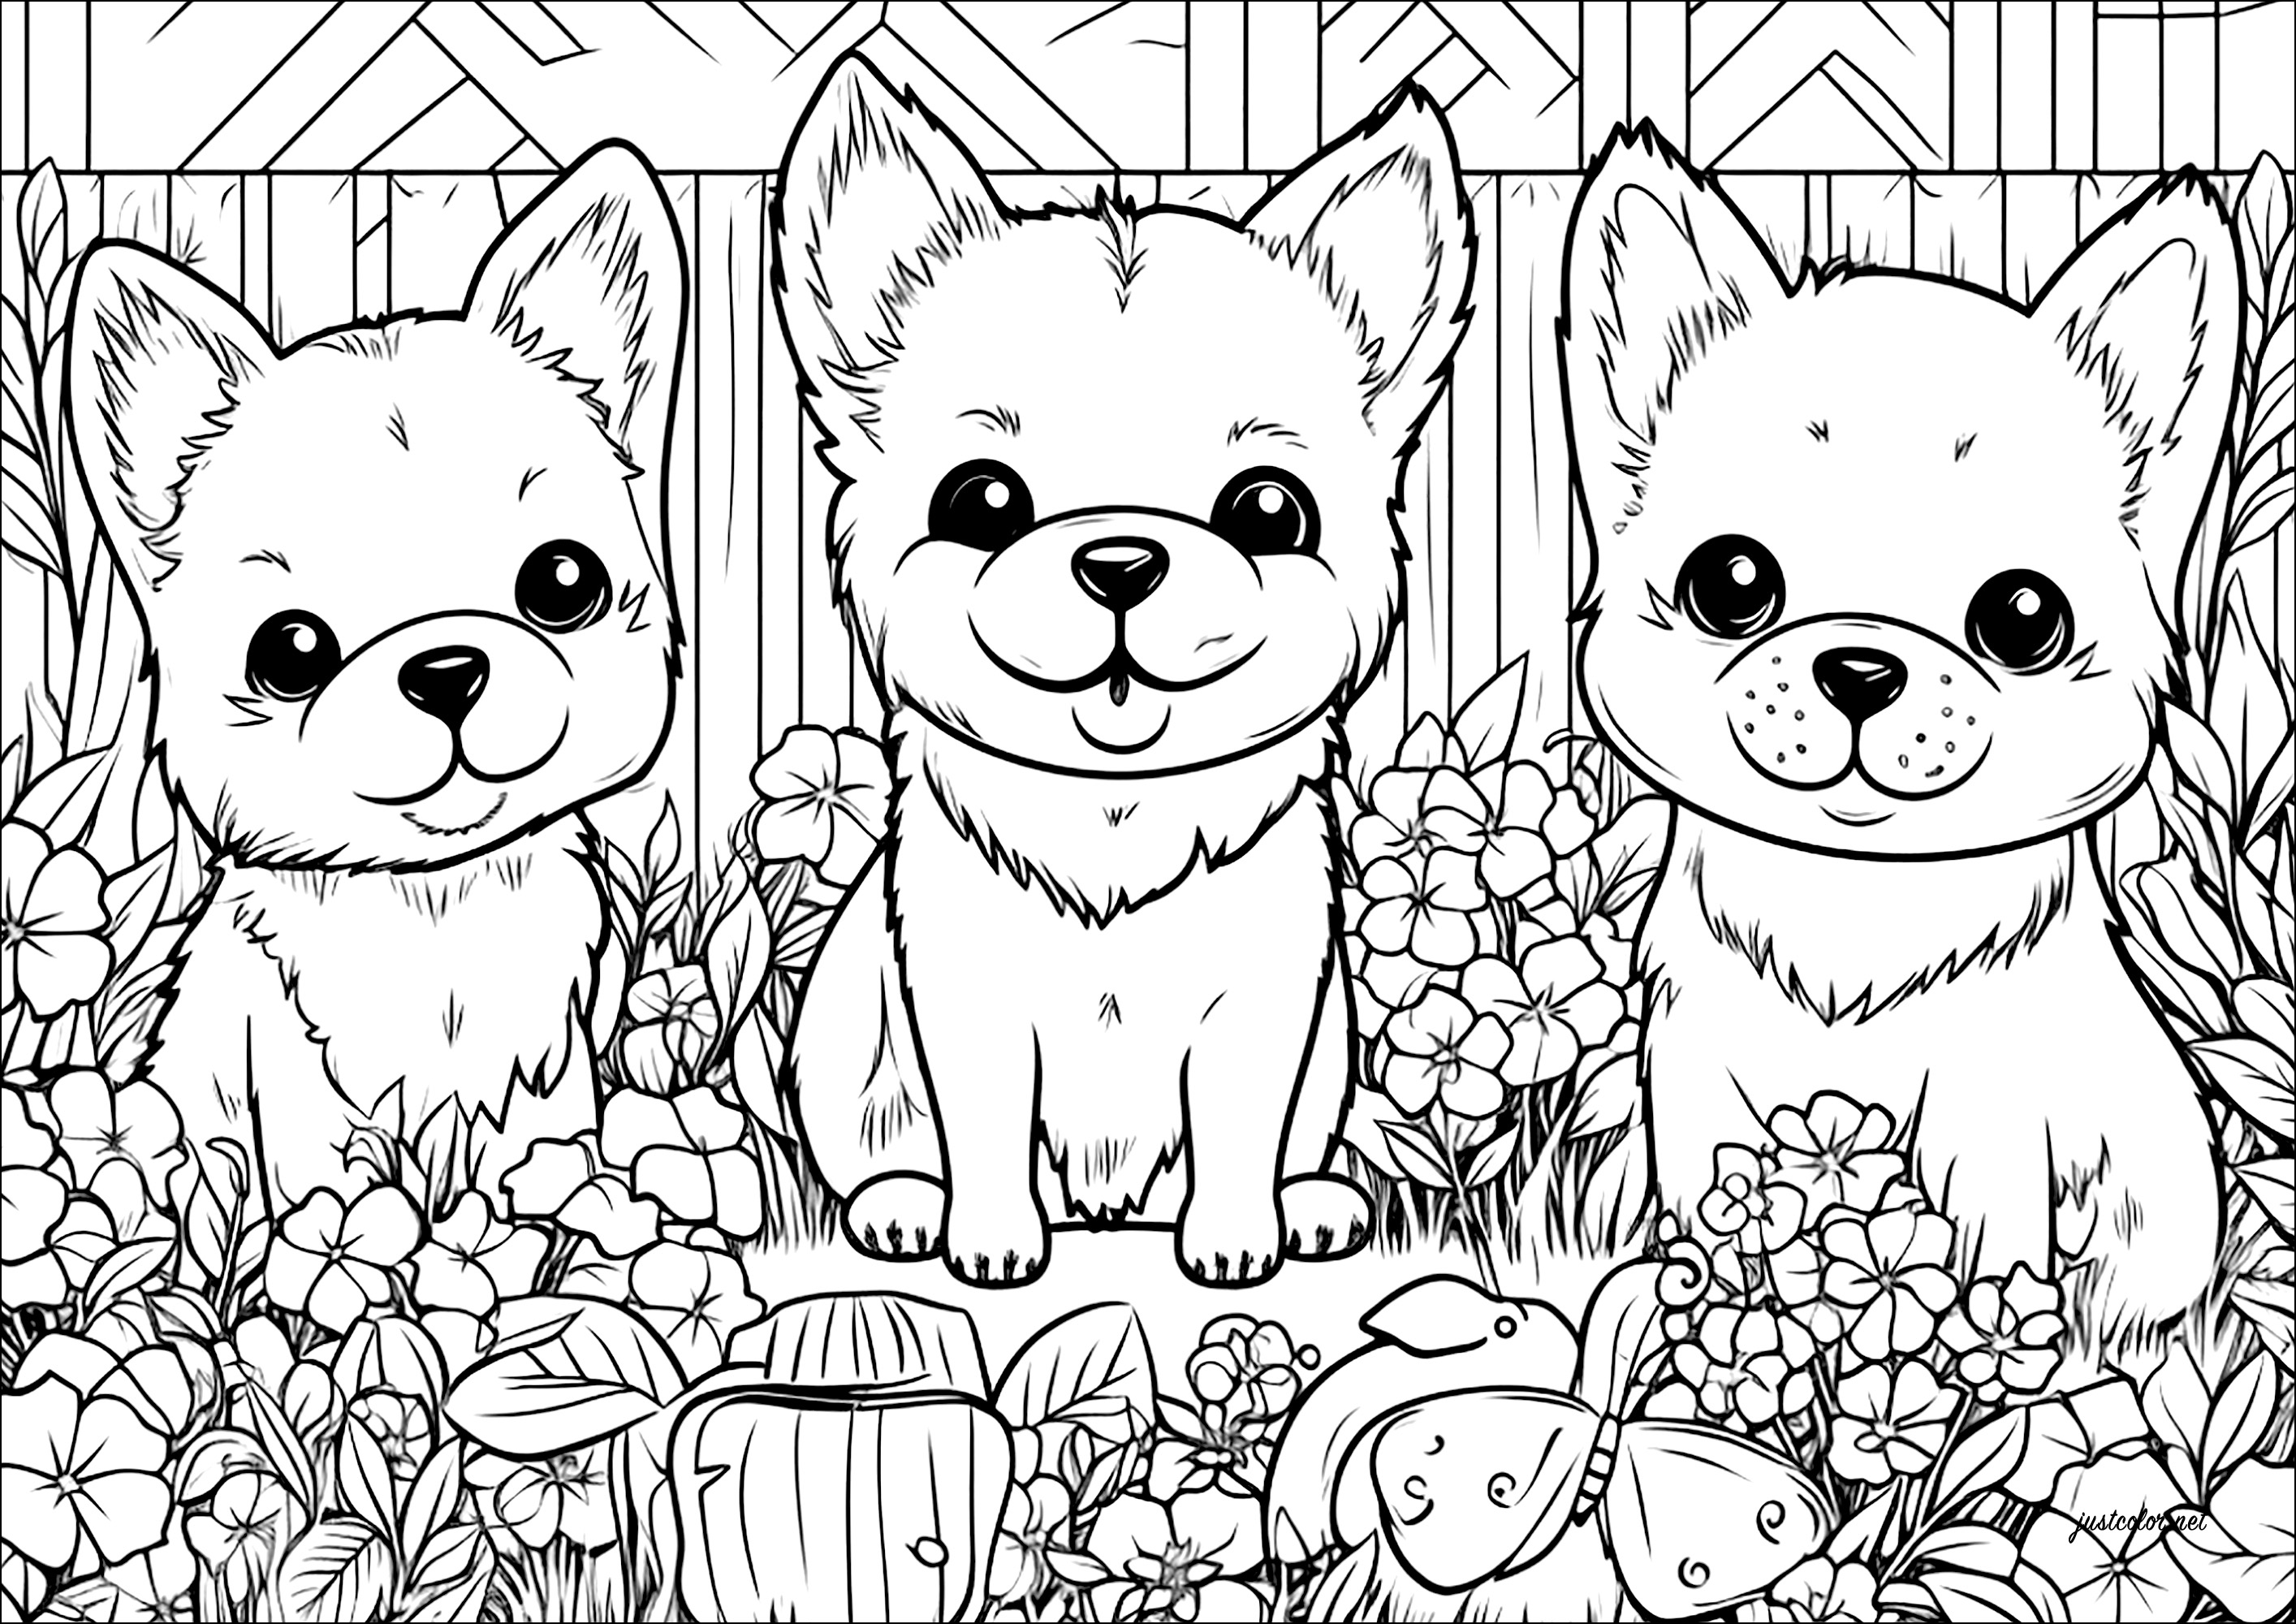 Trois petits chiens dans un jardin fleuri. Un coloriage tout mignon, avec beaucoup de détails au niveau des fleurs et de la végétation du jardin